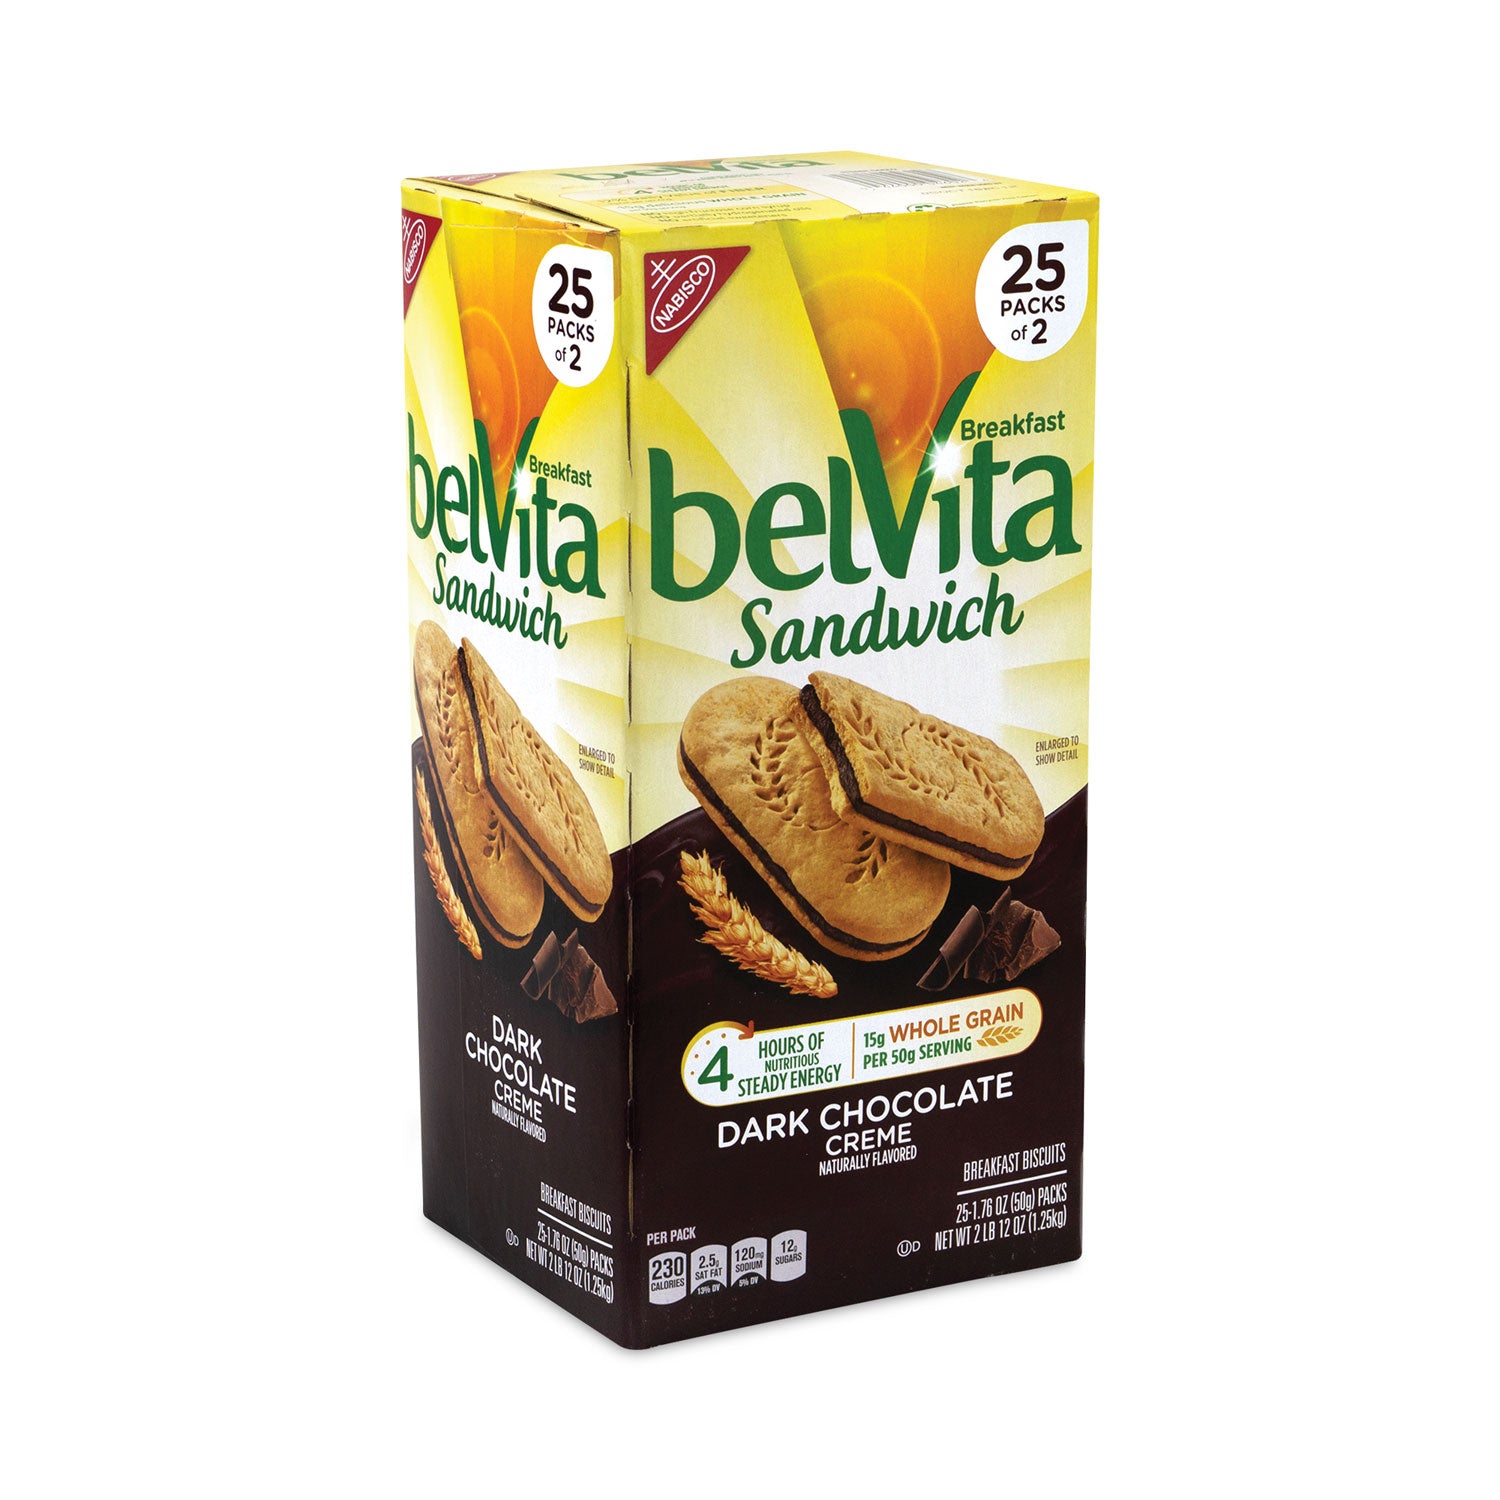 belvita-breakfast-biscuits-dark-chocolate-creme-breakfast-sandwich-176-oz-pack-25-pk-carton-ships-in-1-3-business-days_grr22000570 - 3